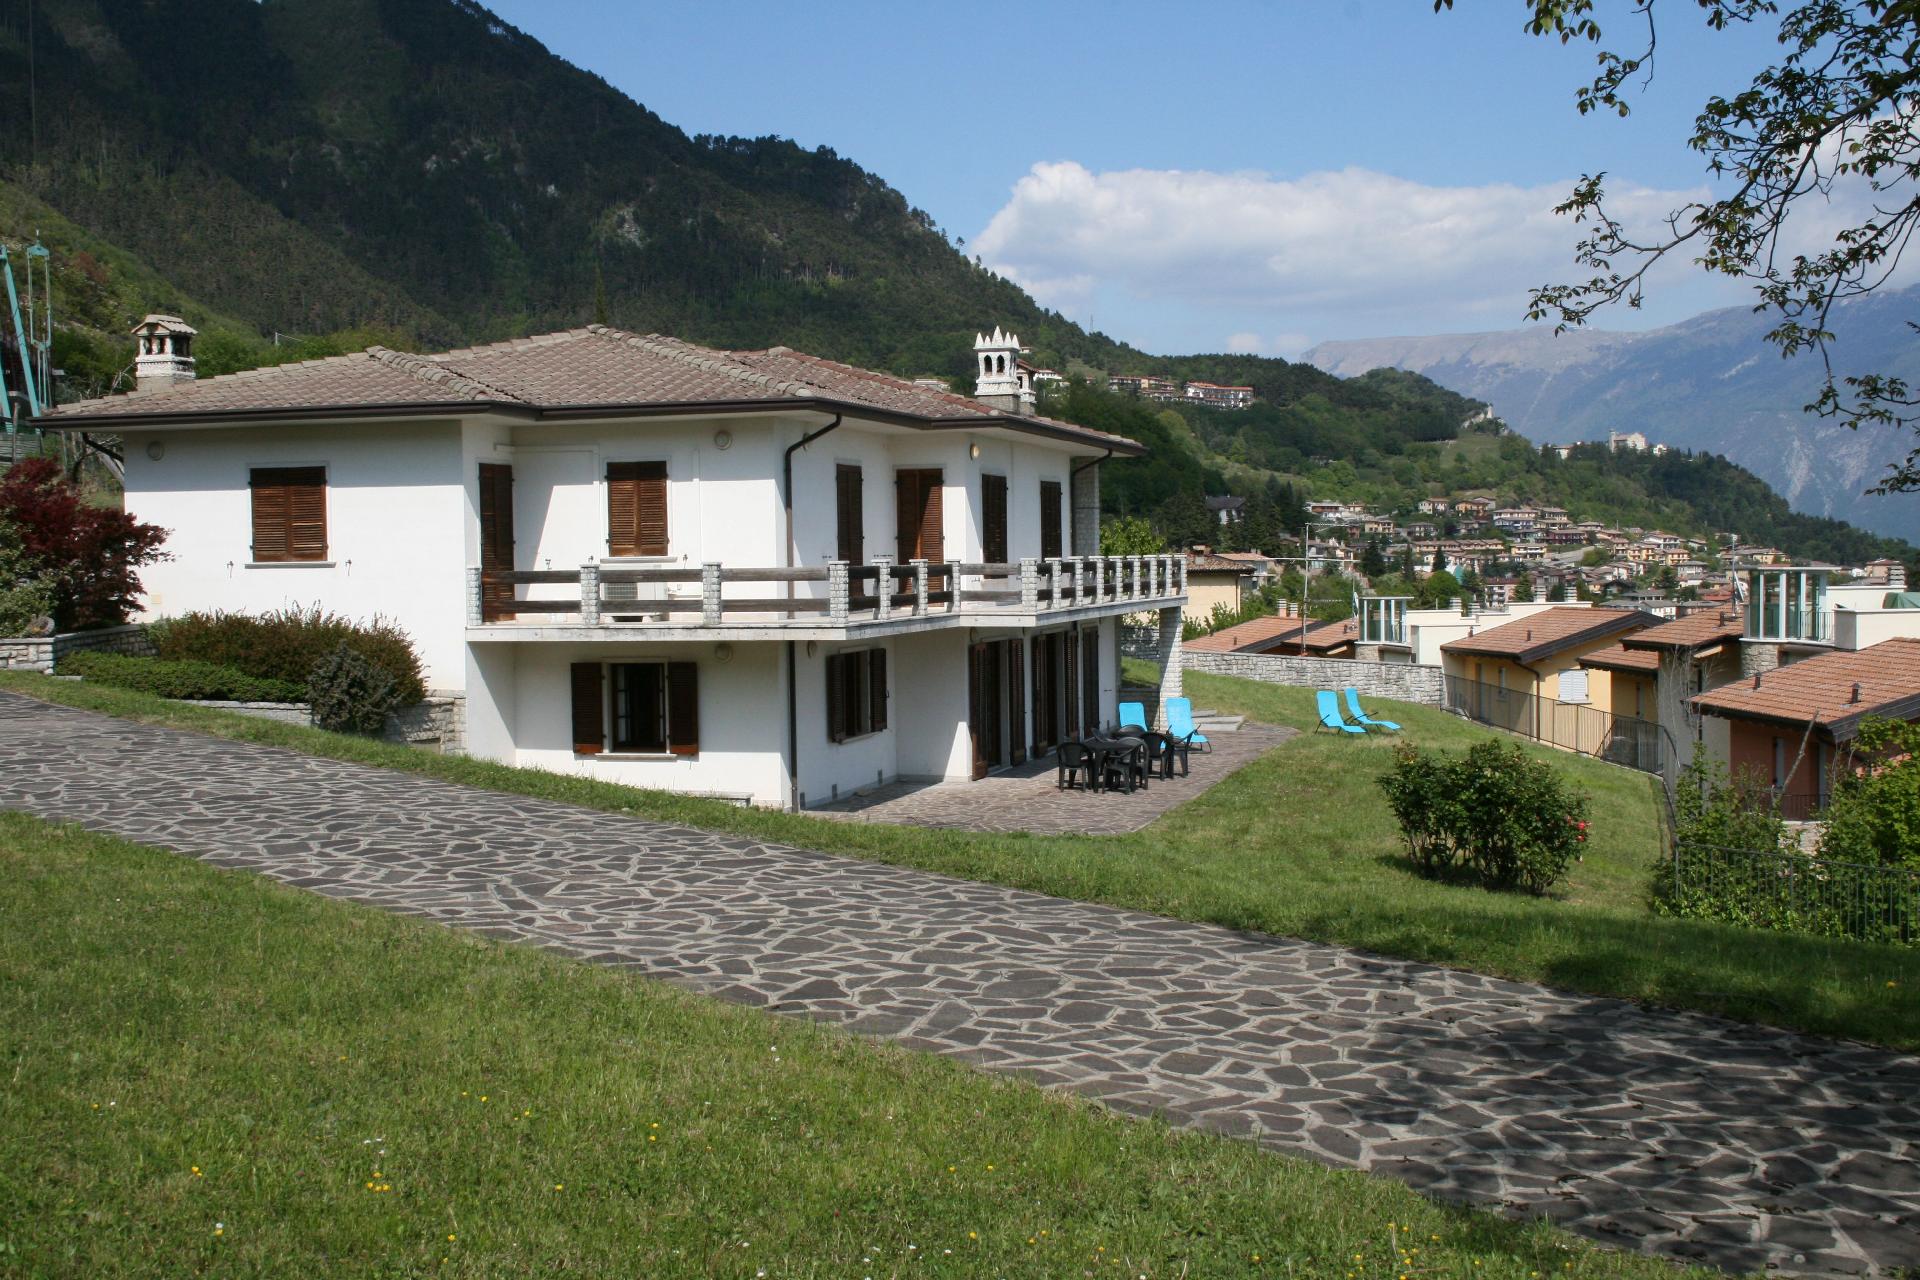 Ferienwohnung für 6 Personen ca. 75 m² i Ferienhaus in Italien